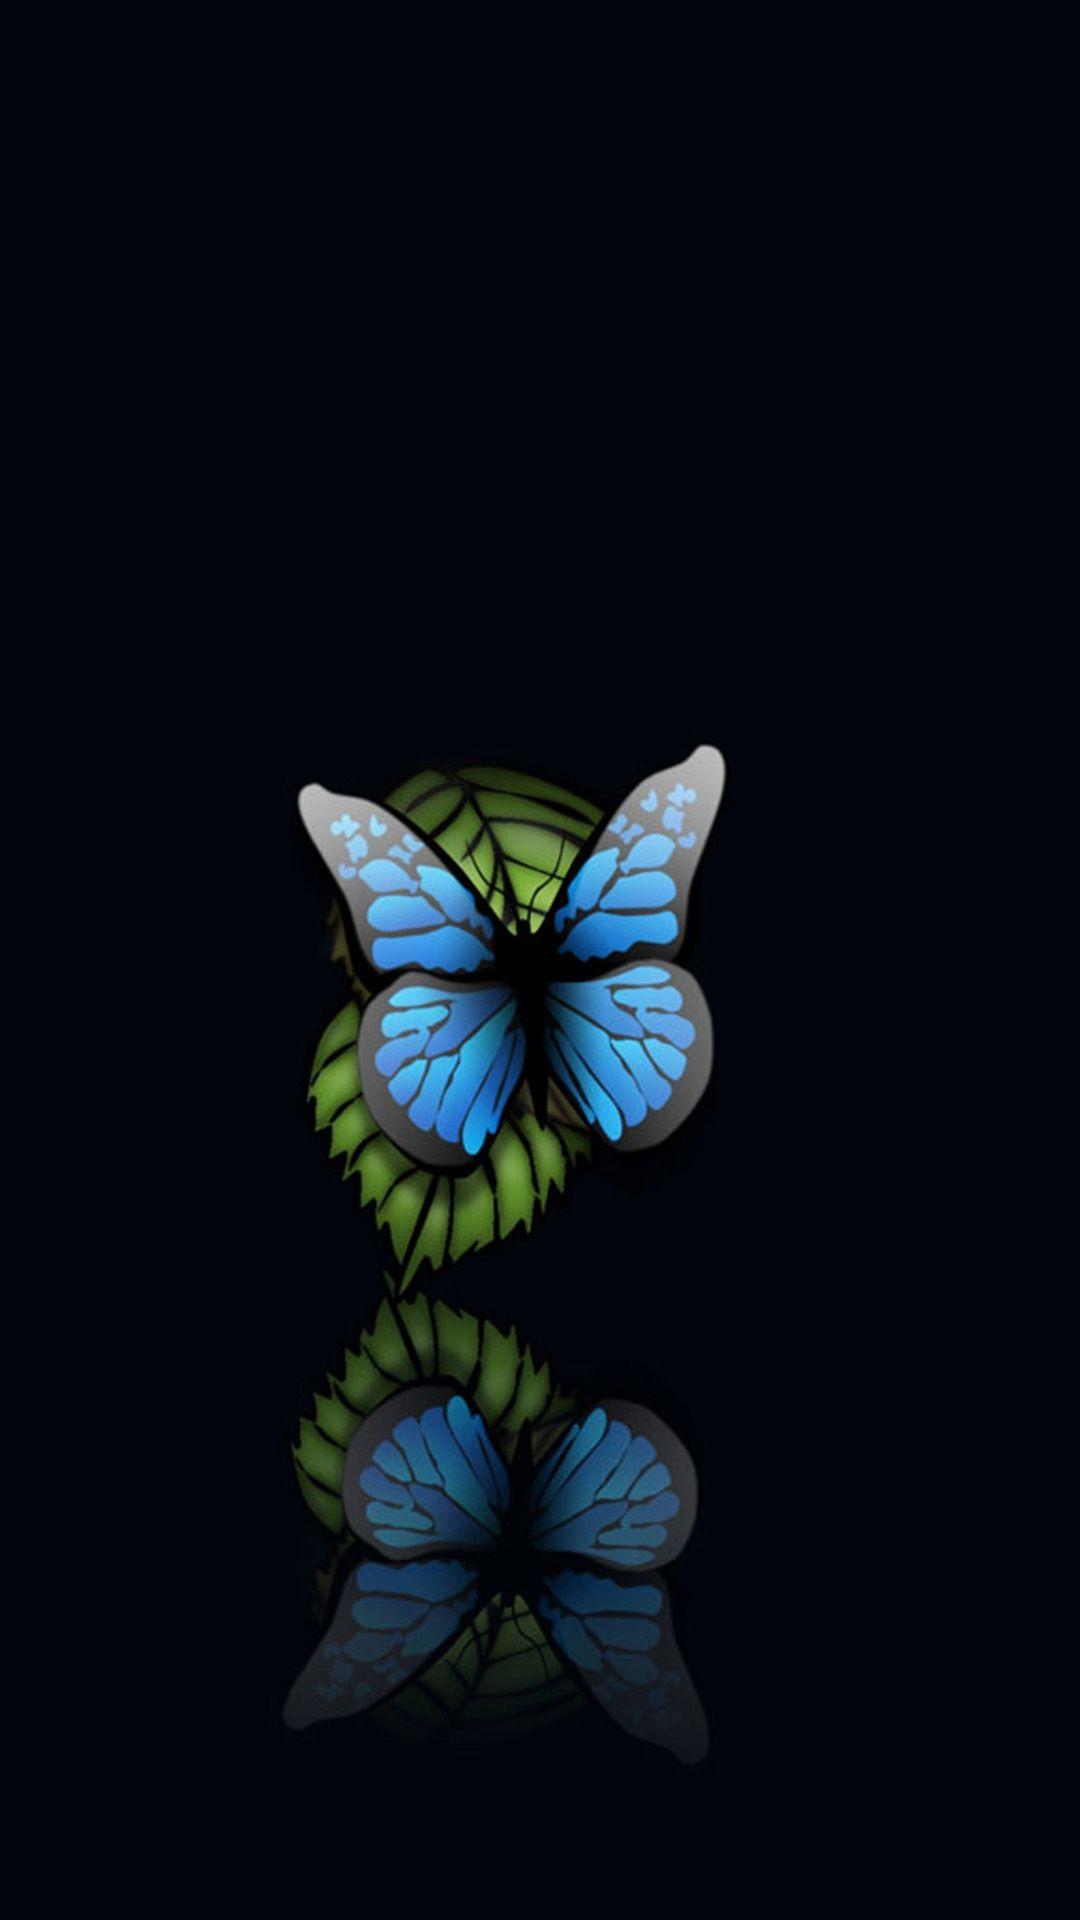 Tải xuống miễn phí Hình nền Android 1080x1920 Blue Butterfly Black Background